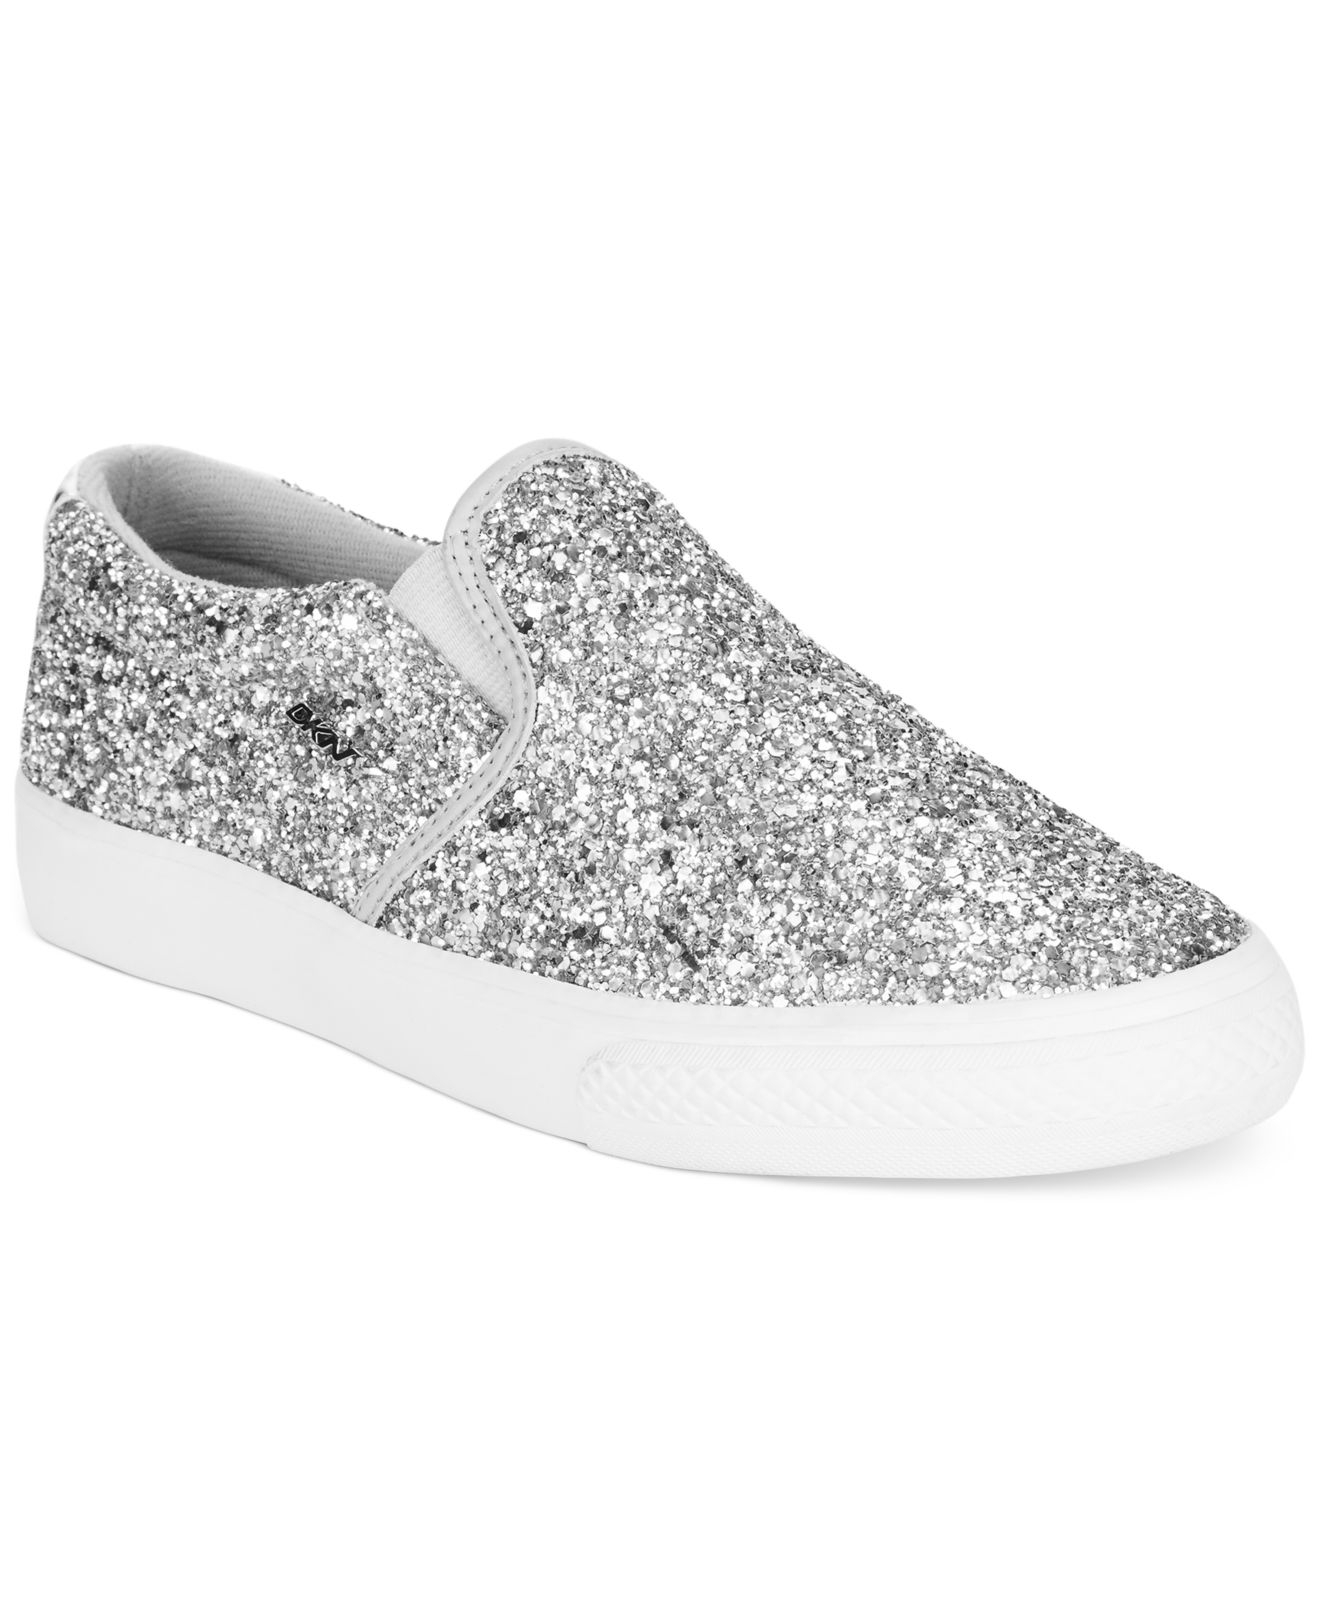 DKNY Beth Slip-On Sneakers in Silver Glitter (Metallic) - Lyst